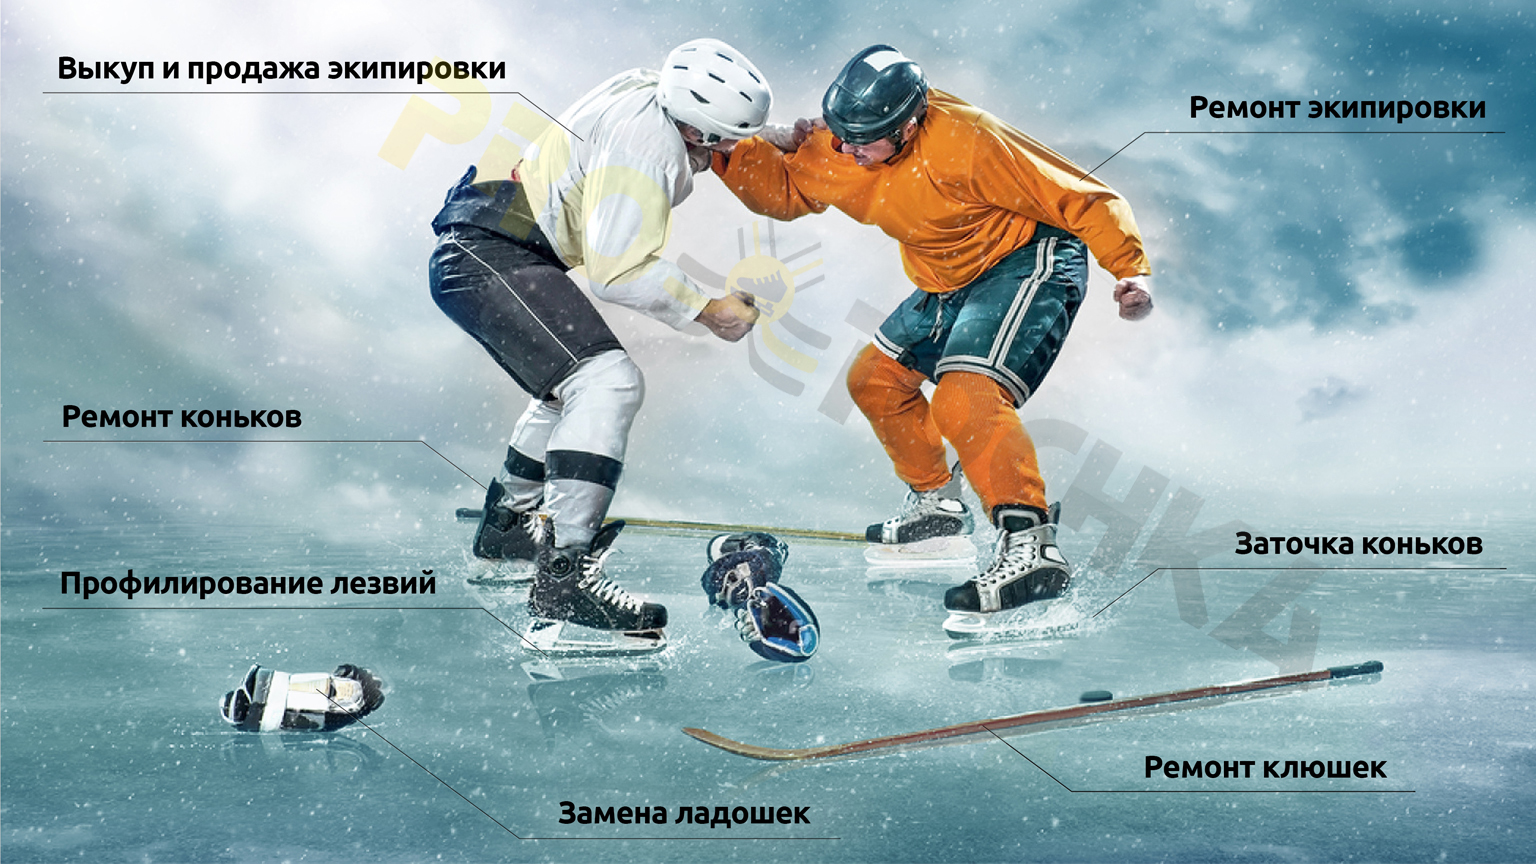 Сеть хоккейных мастерских PRO-TOCHKA